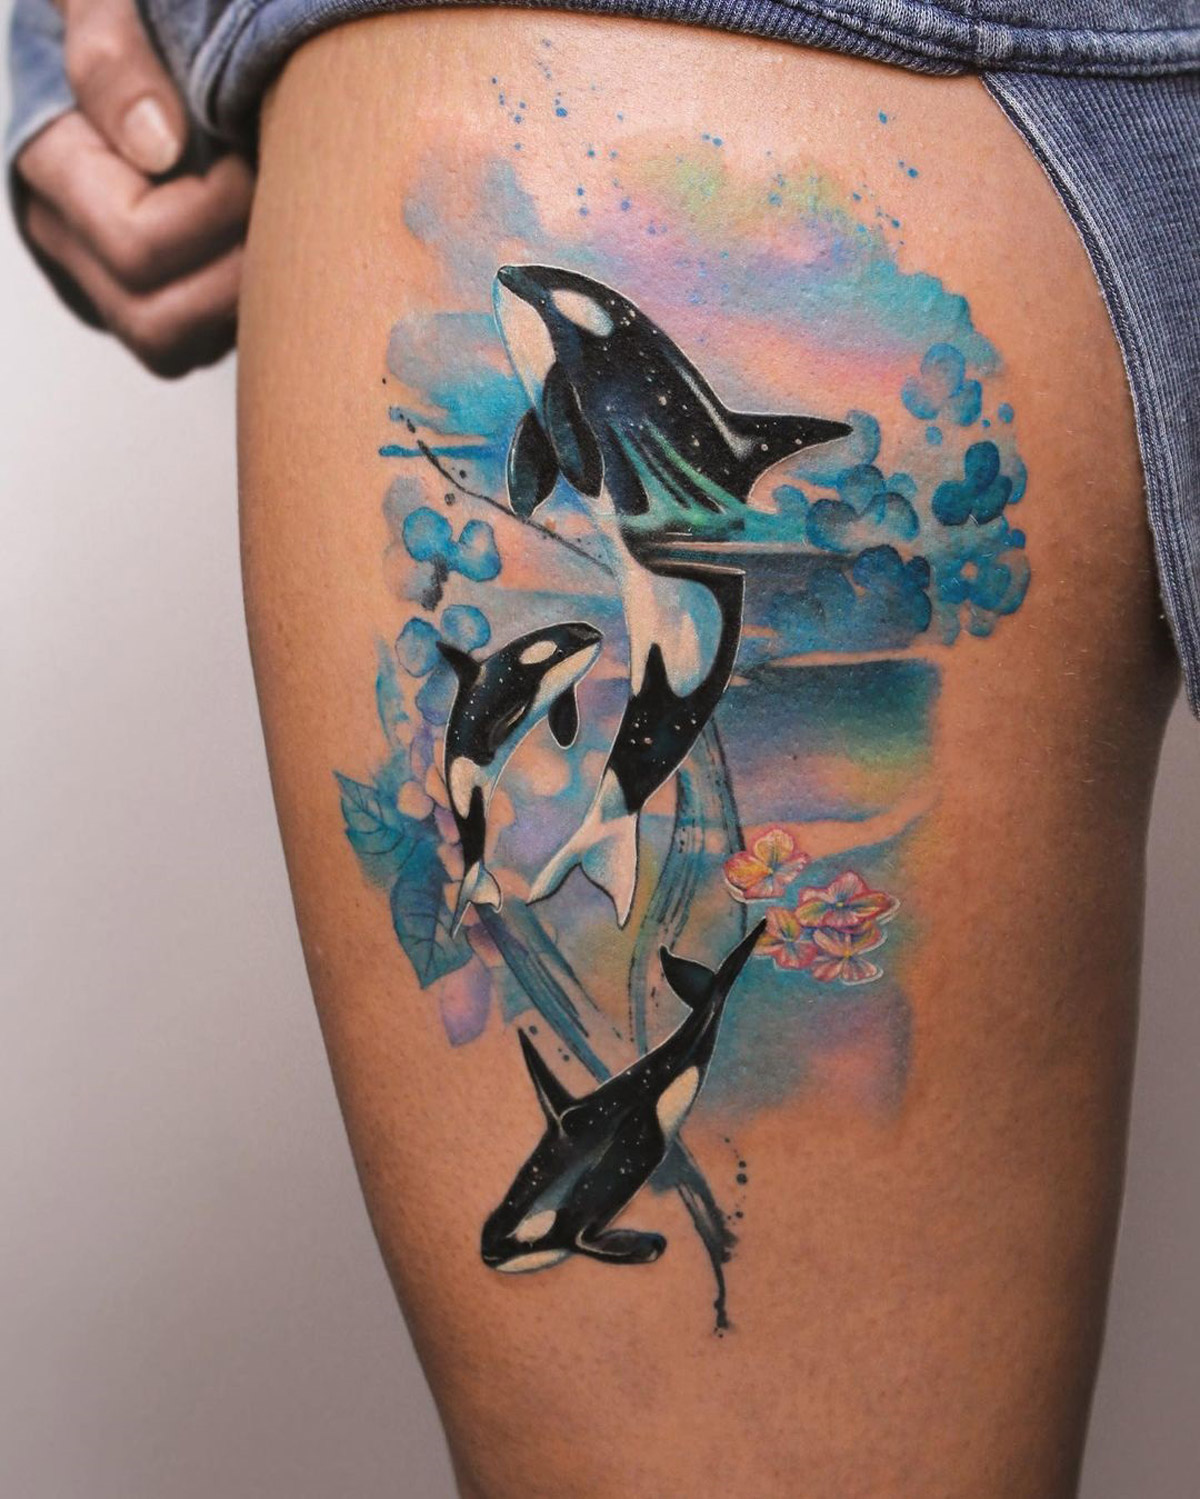 Orcas Thigh Tattoo